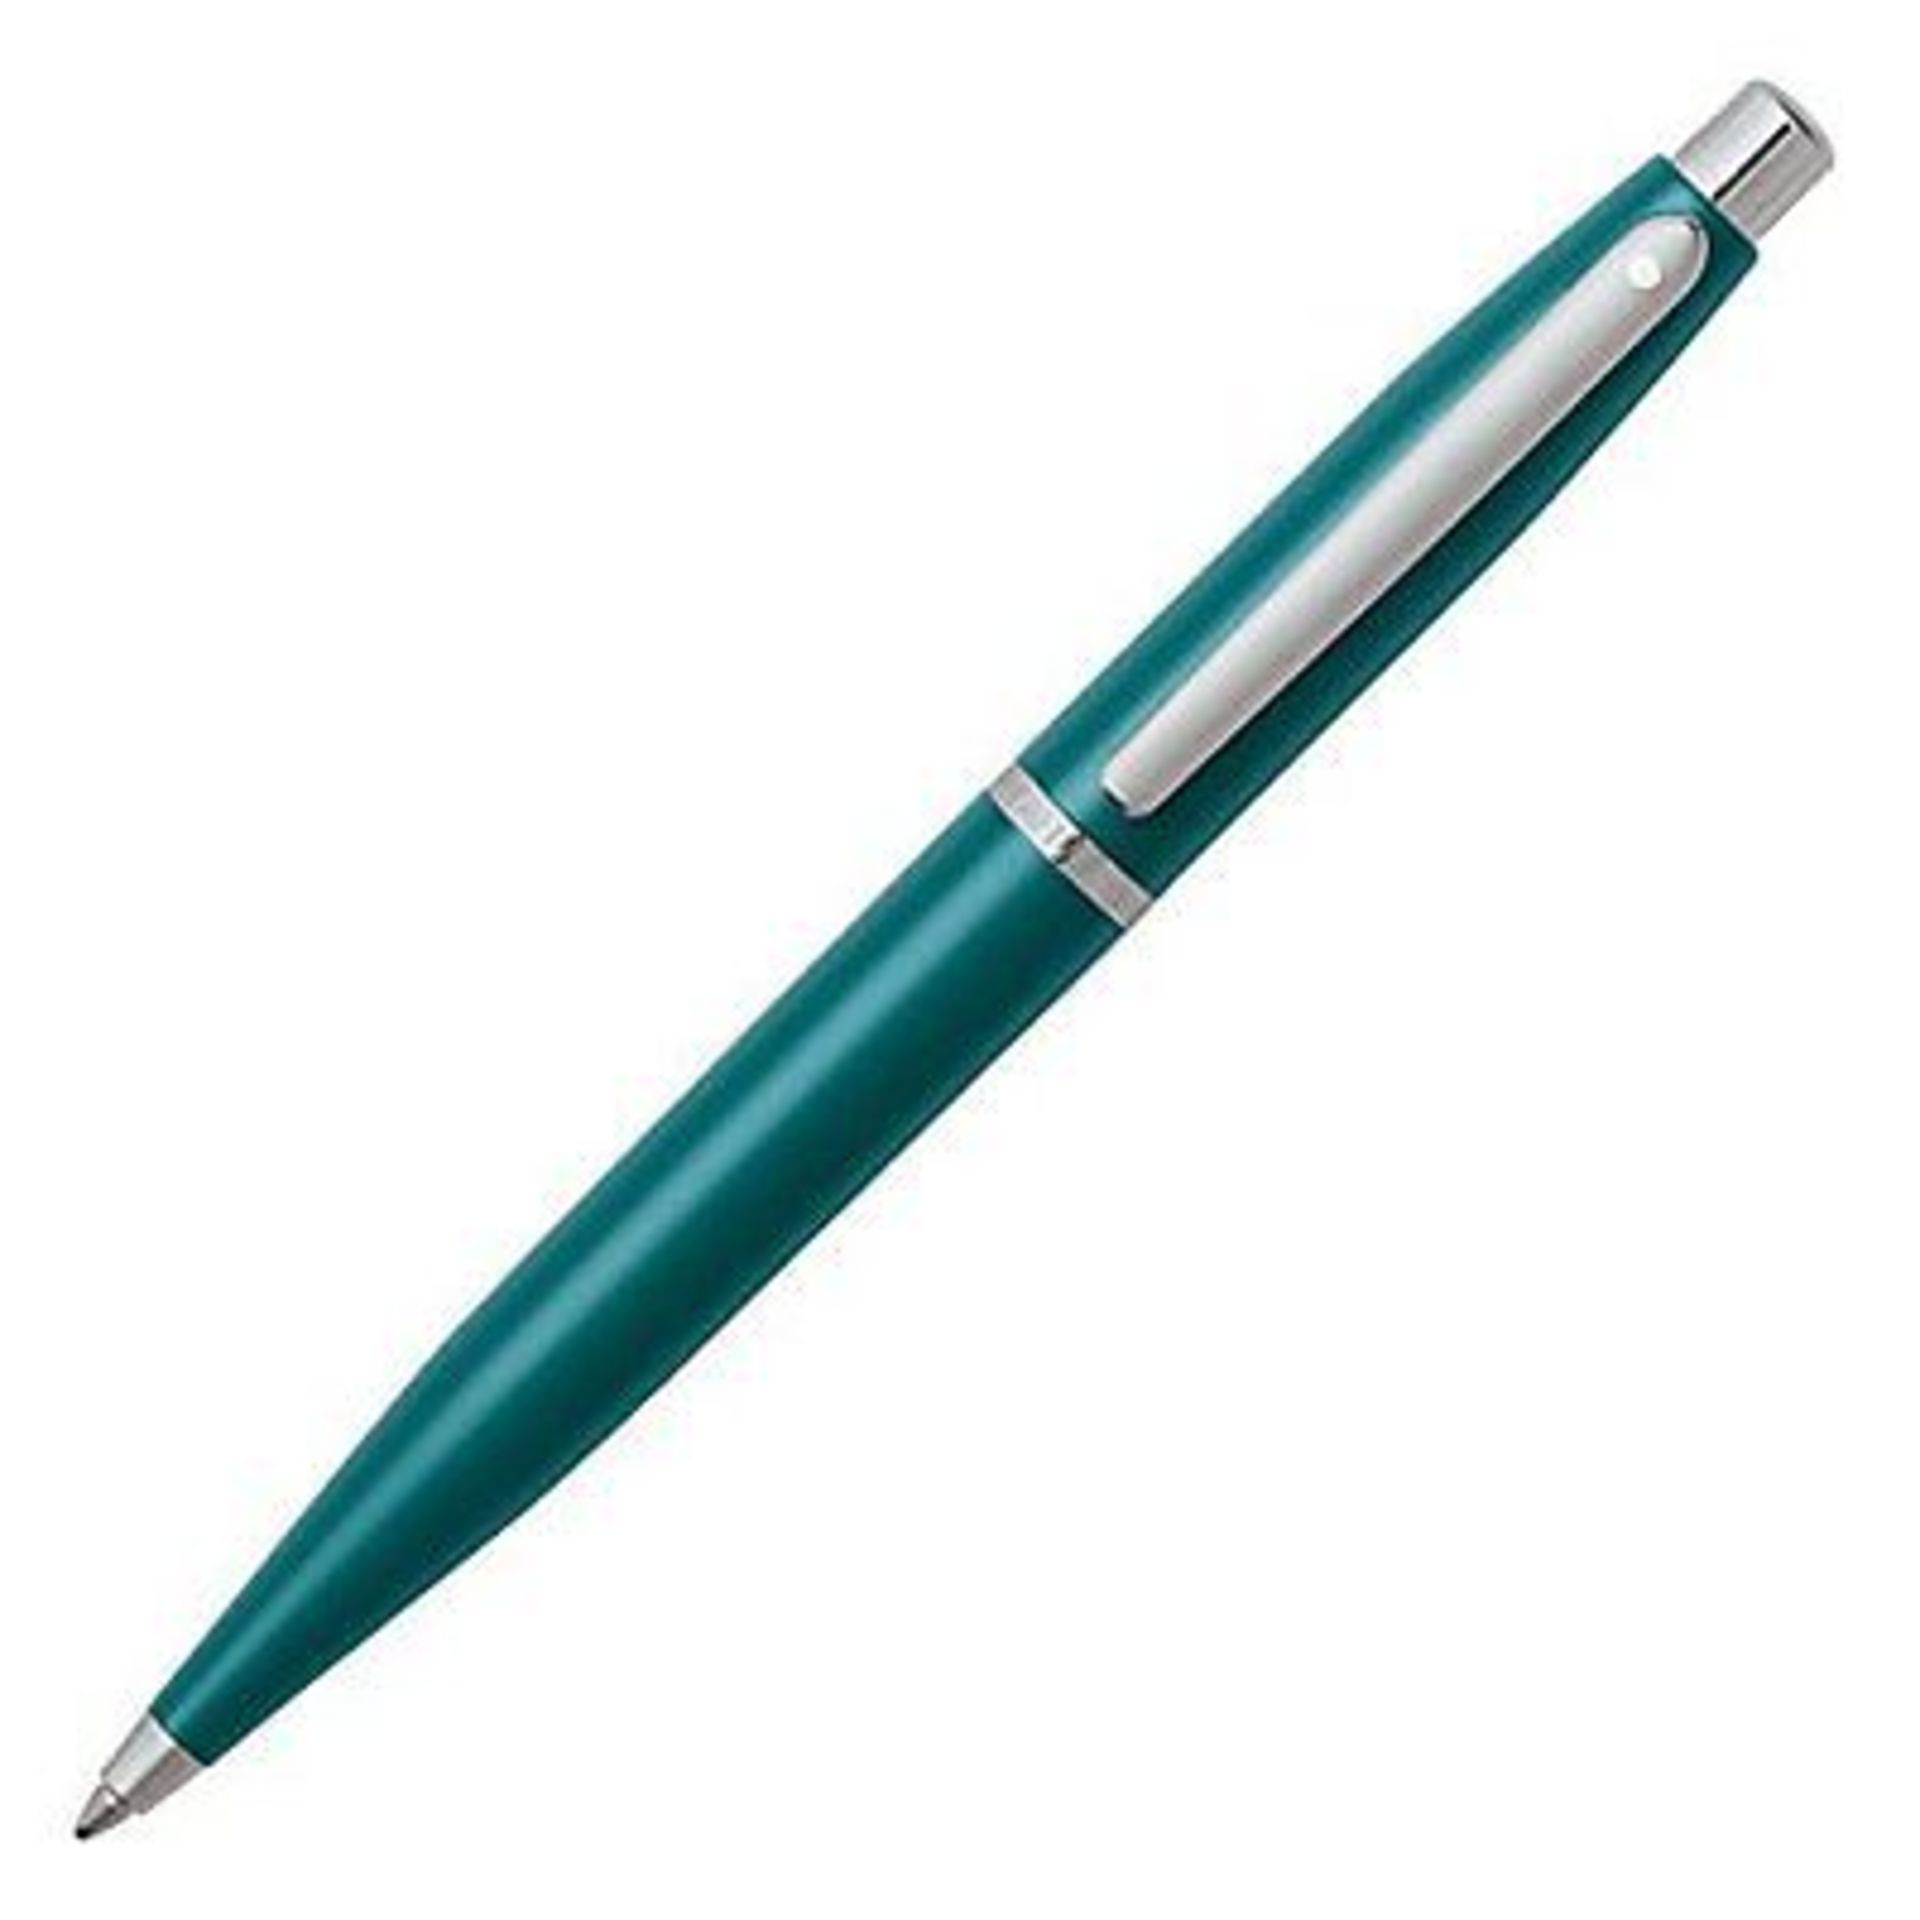 V Brand New Sheaffer Vfm Series Ballpoint Pen Ultra Mint eBay Price £18.76